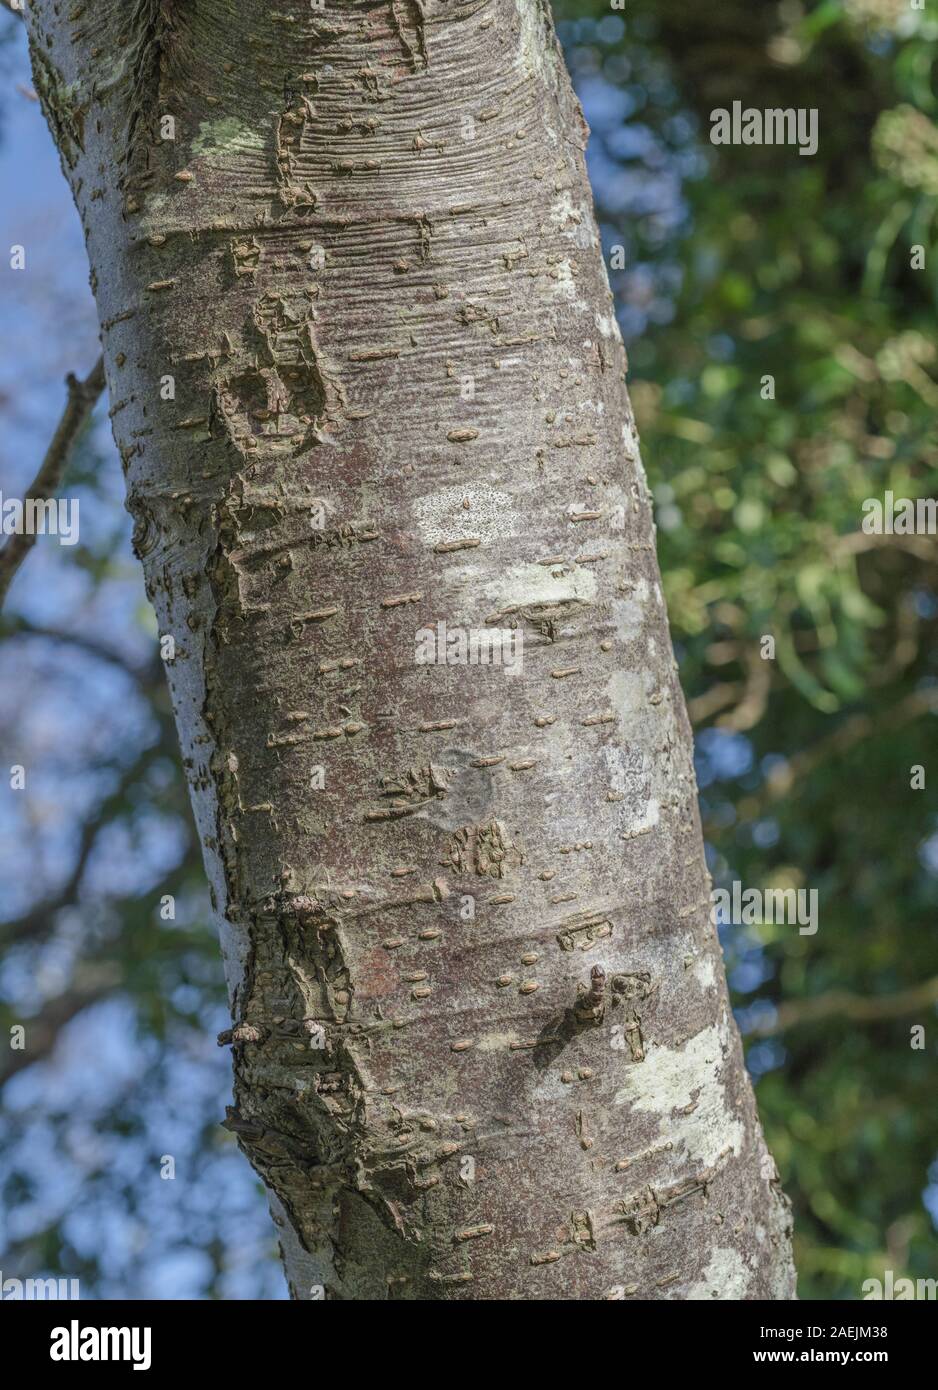 Rissige Baumrinde Textur des gemeinsamen Erle/Alnus glutinosa. Teile der Sumpf - Wohnung Wasser-liebenden Baum als Heilpflanze in pflanzliche Heilmittel verwendet Stockfoto